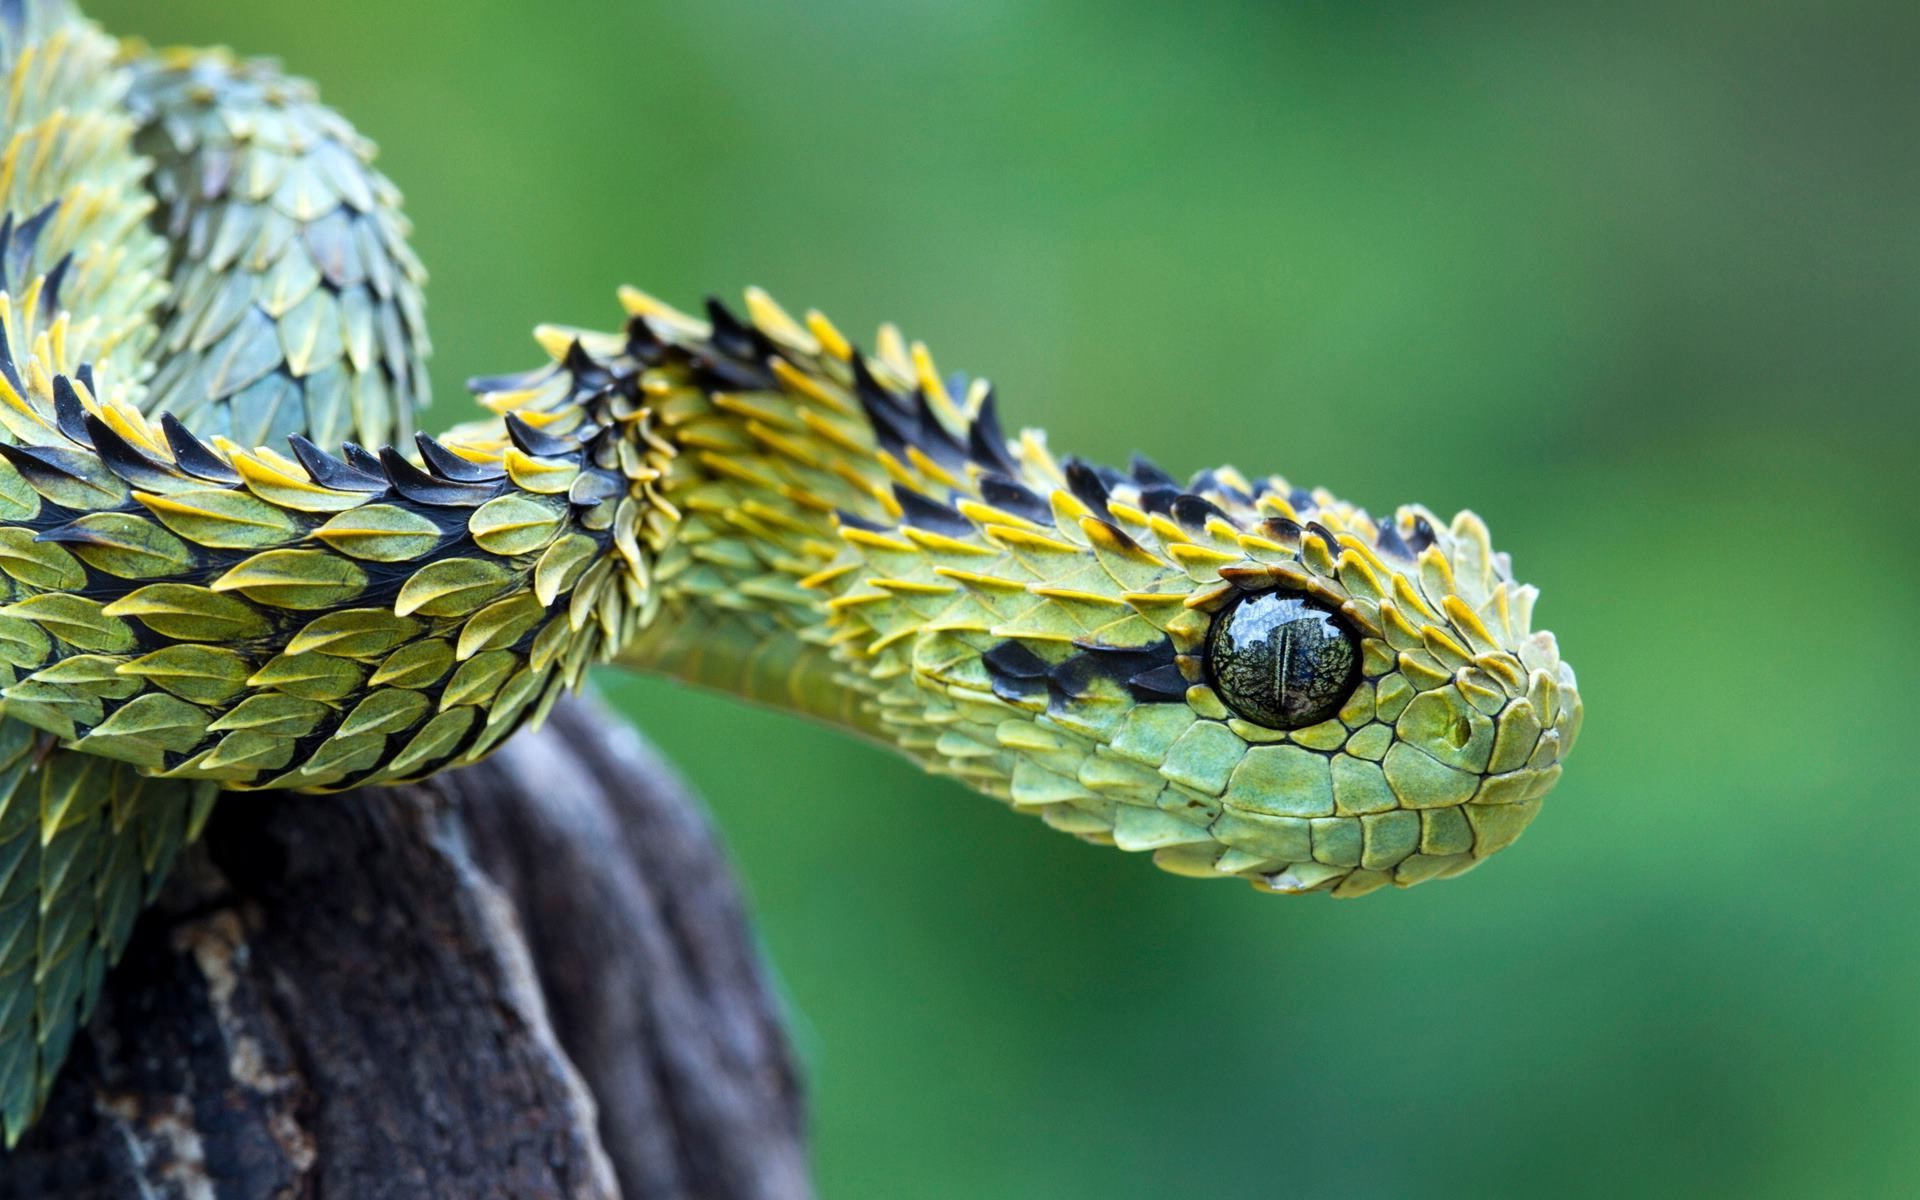 Bush viper snake